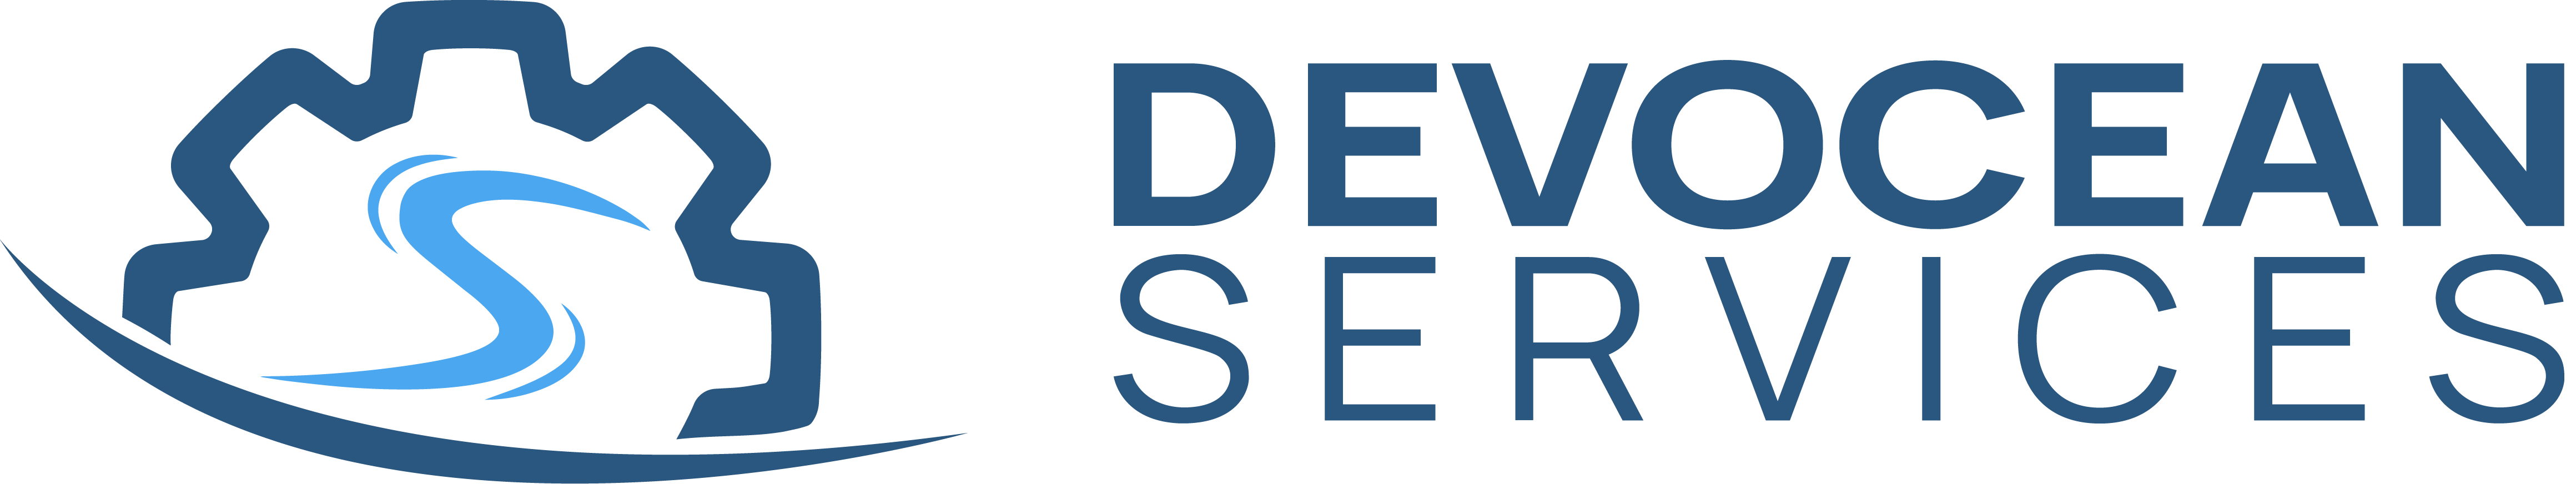 DevOcean Services Vector logo